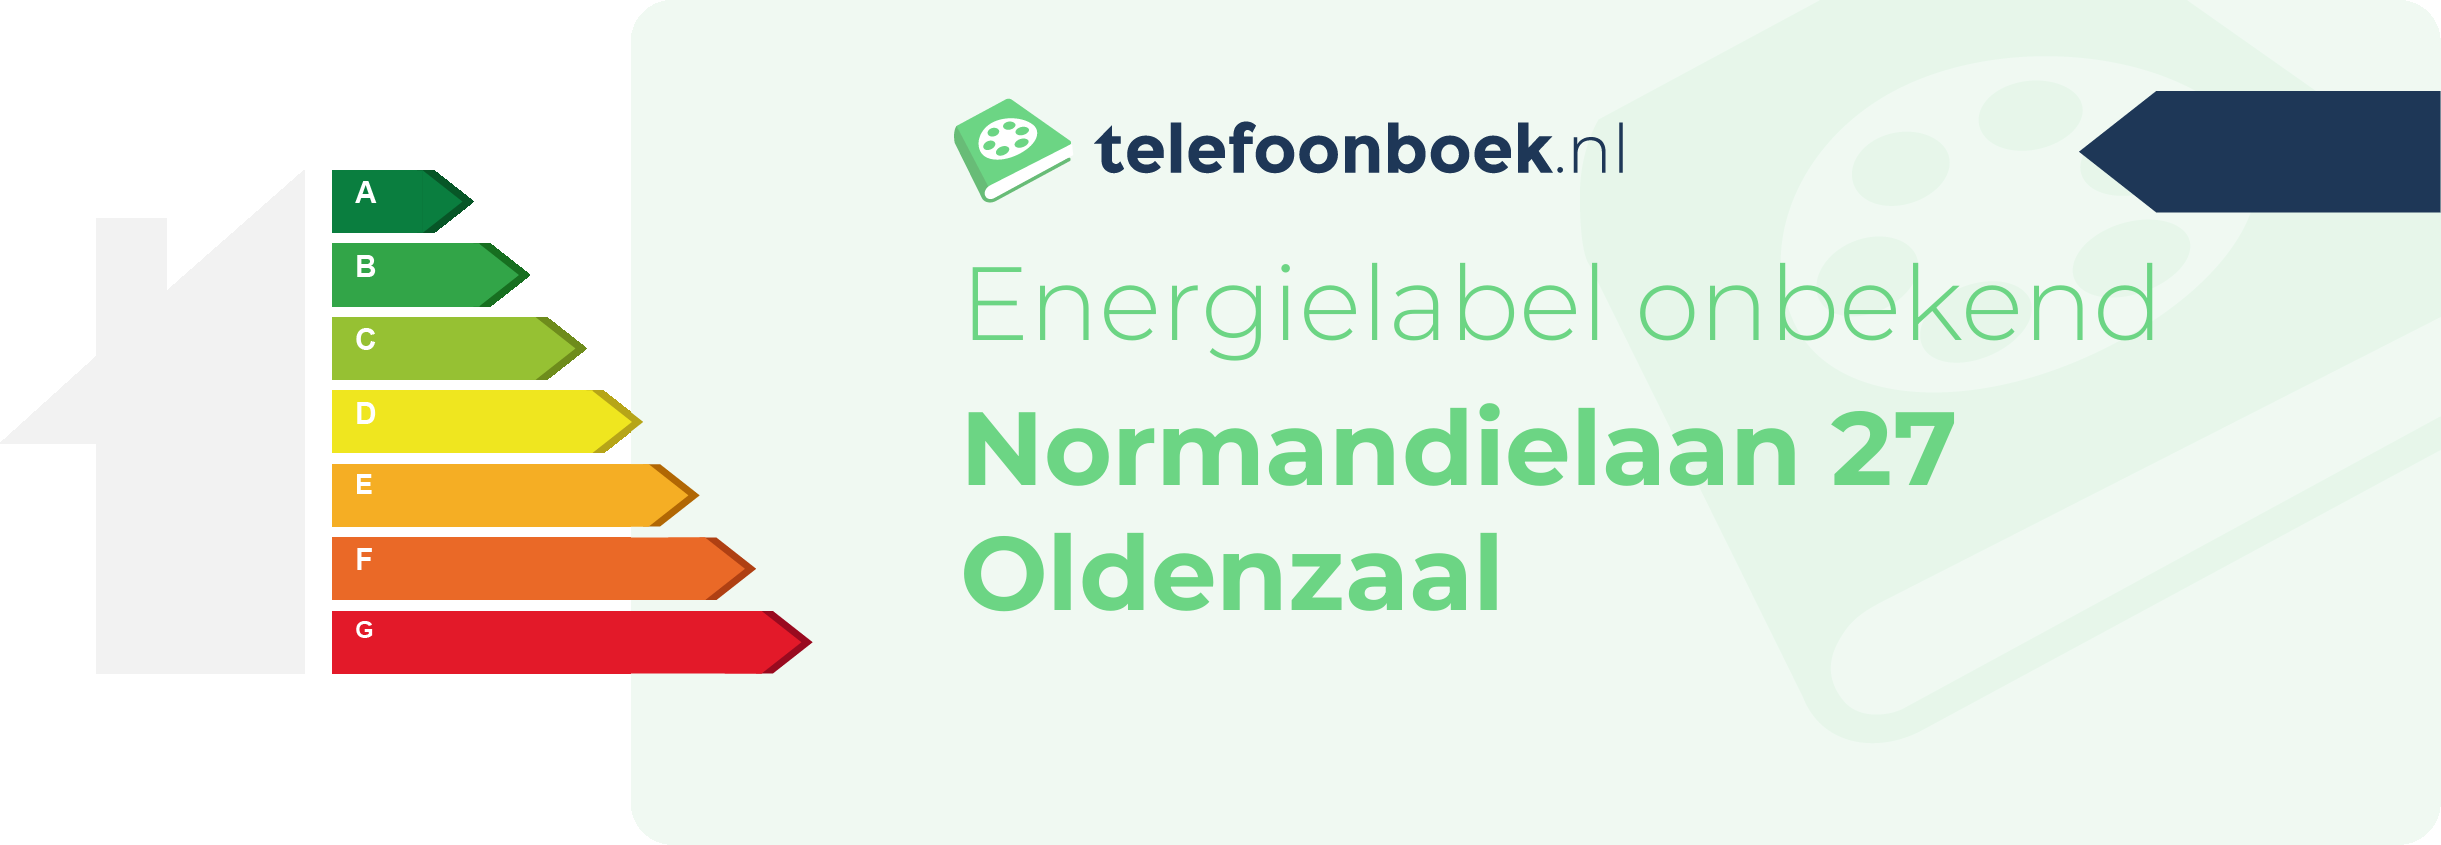 Energielabel Normandielaan 27 Oldenzaal